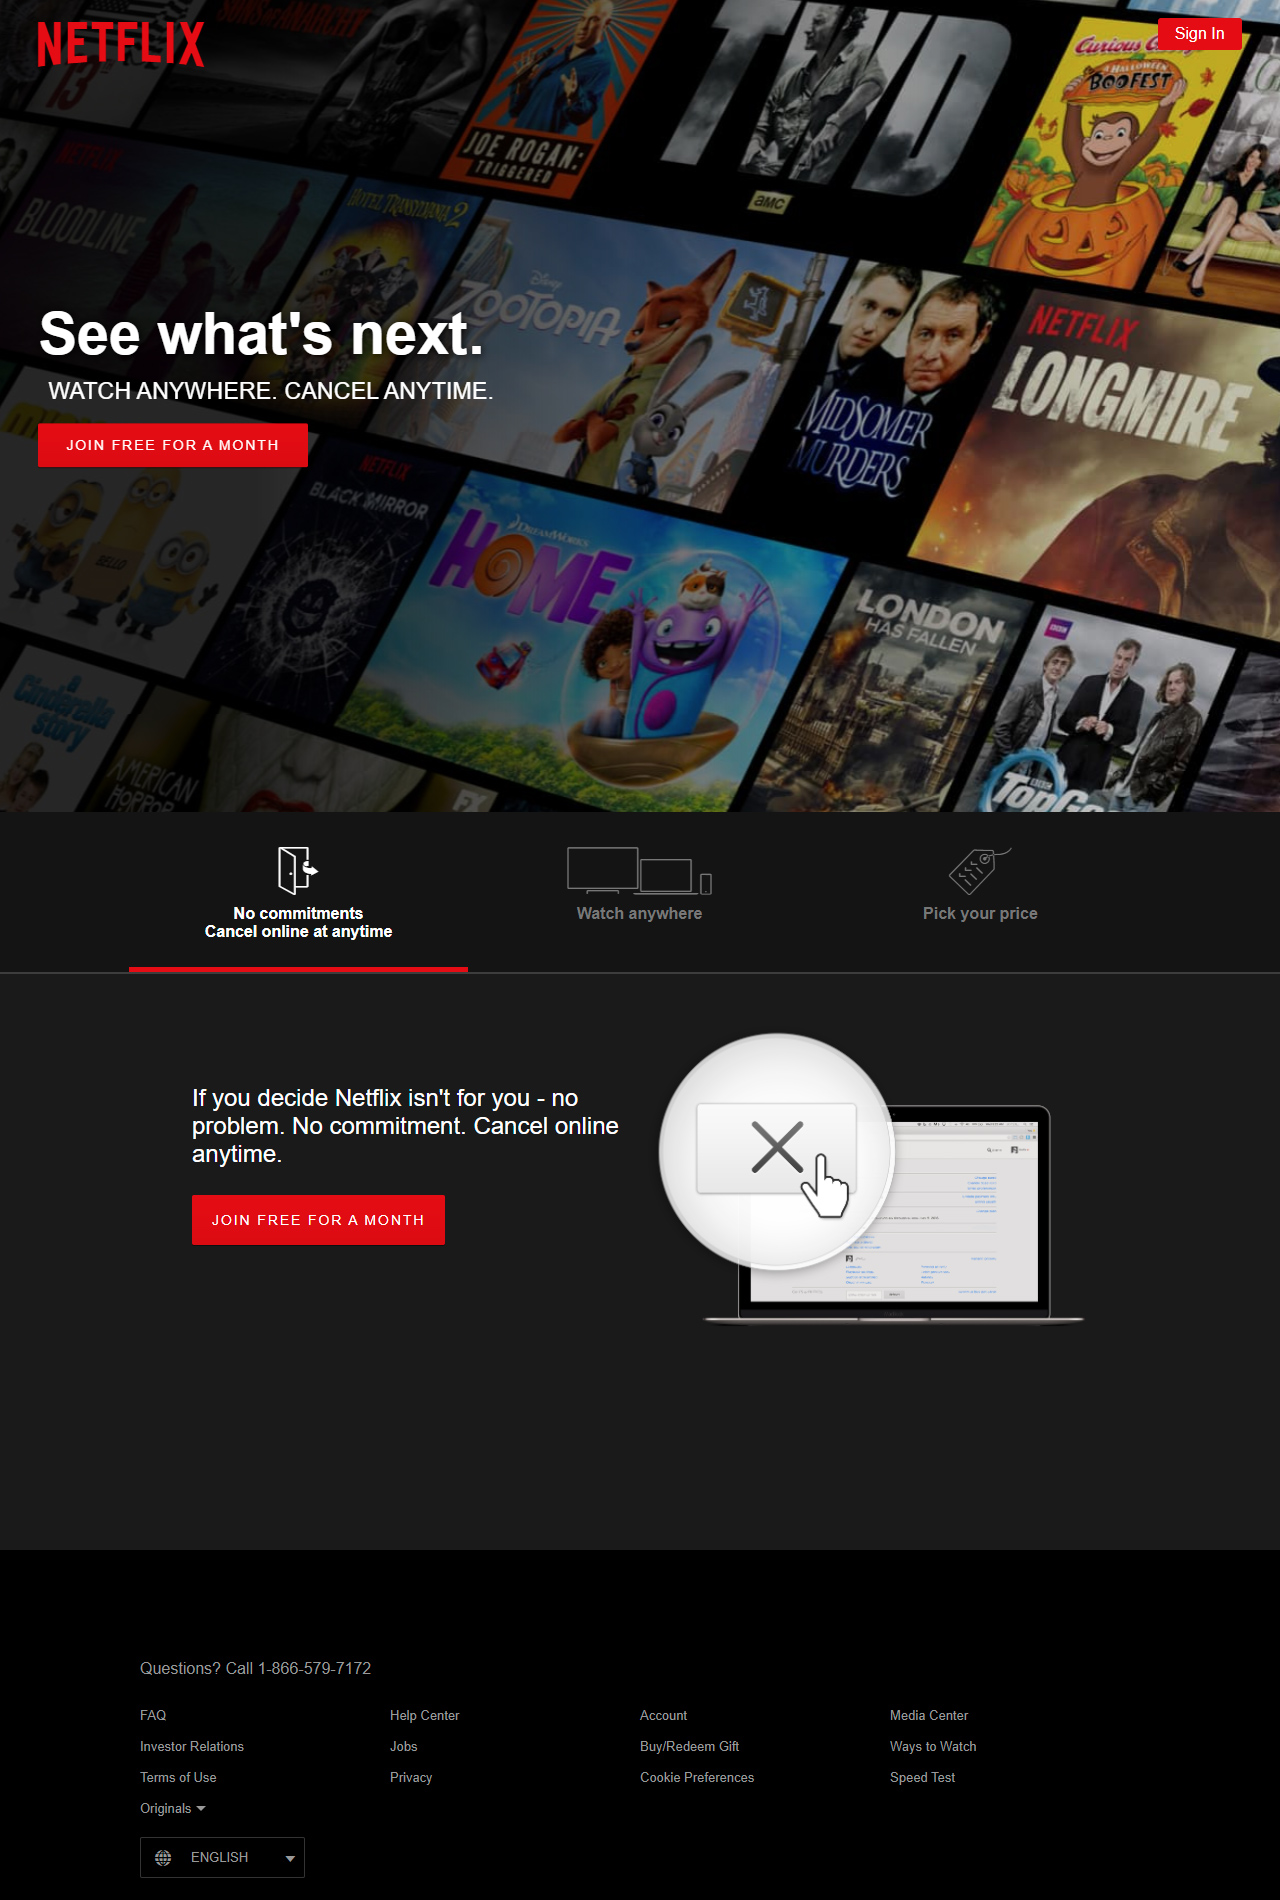 Netflix website in 2016